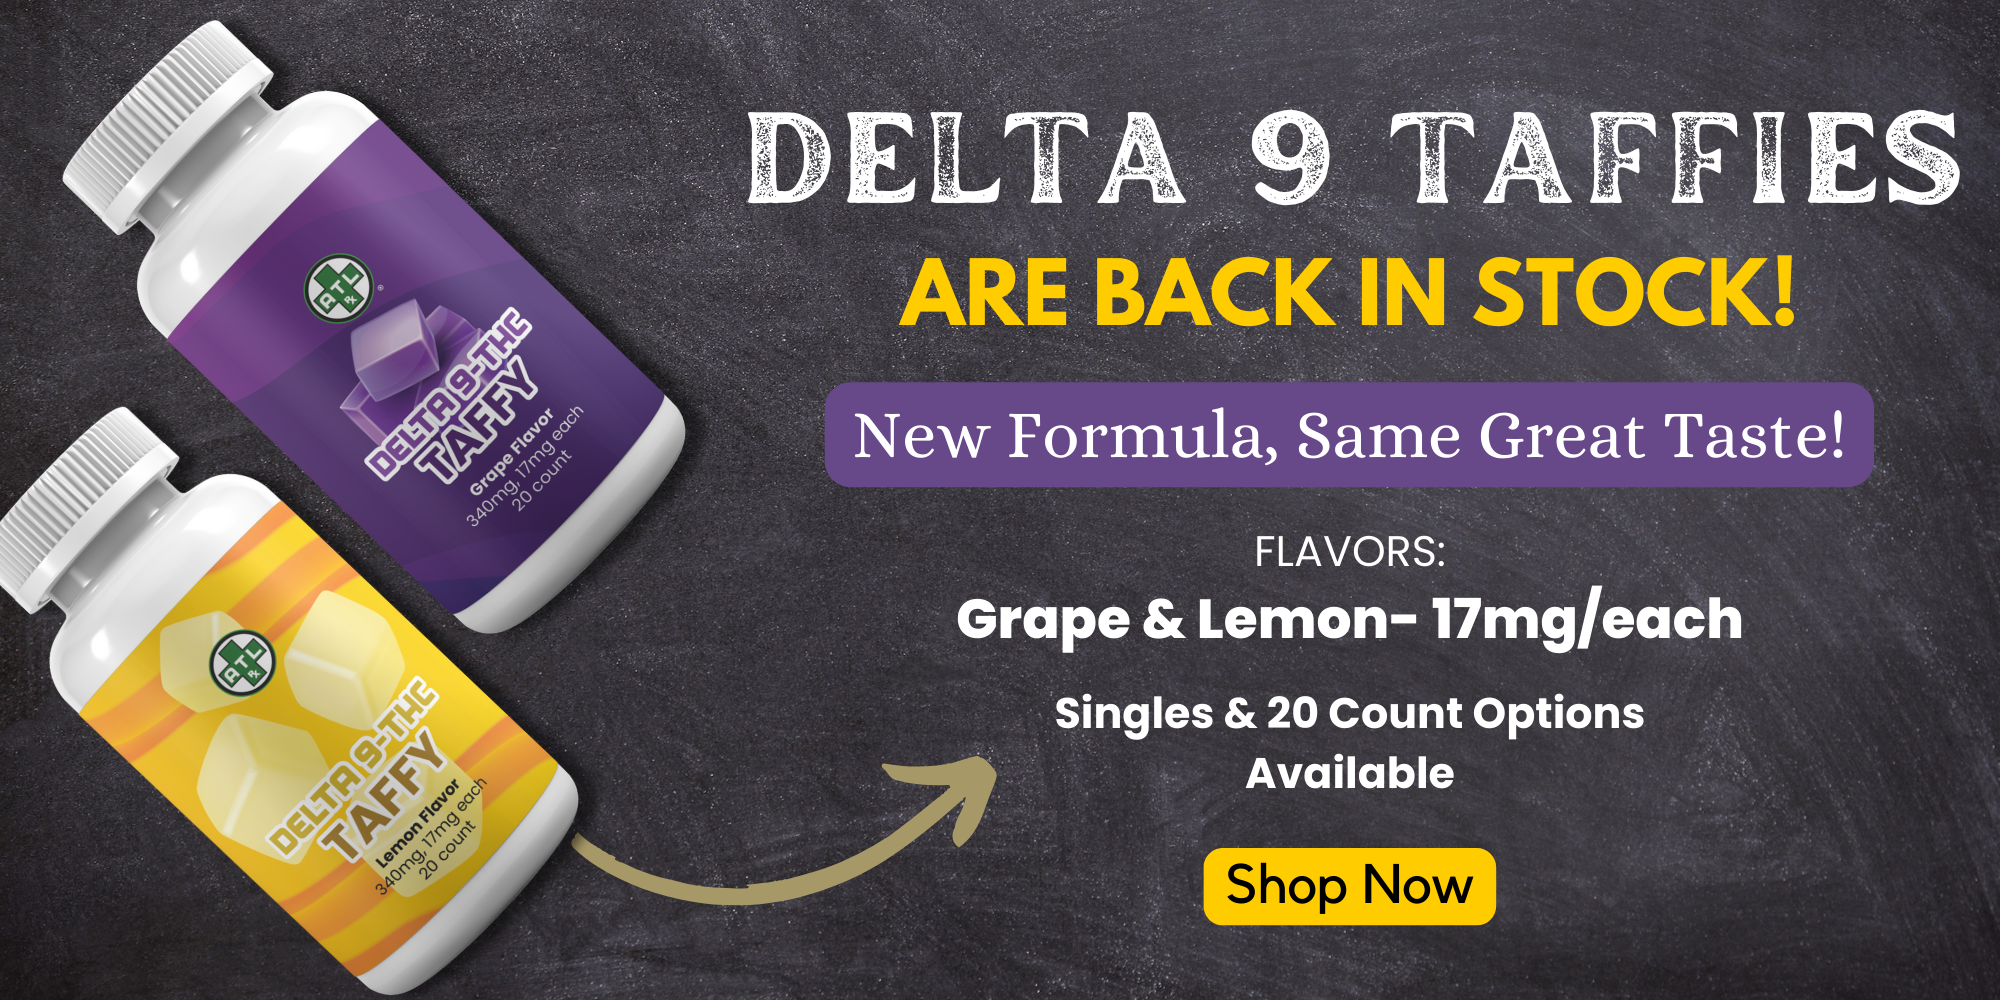 ATLRx Grape & Lemon Flavor Delta 9 Taffies